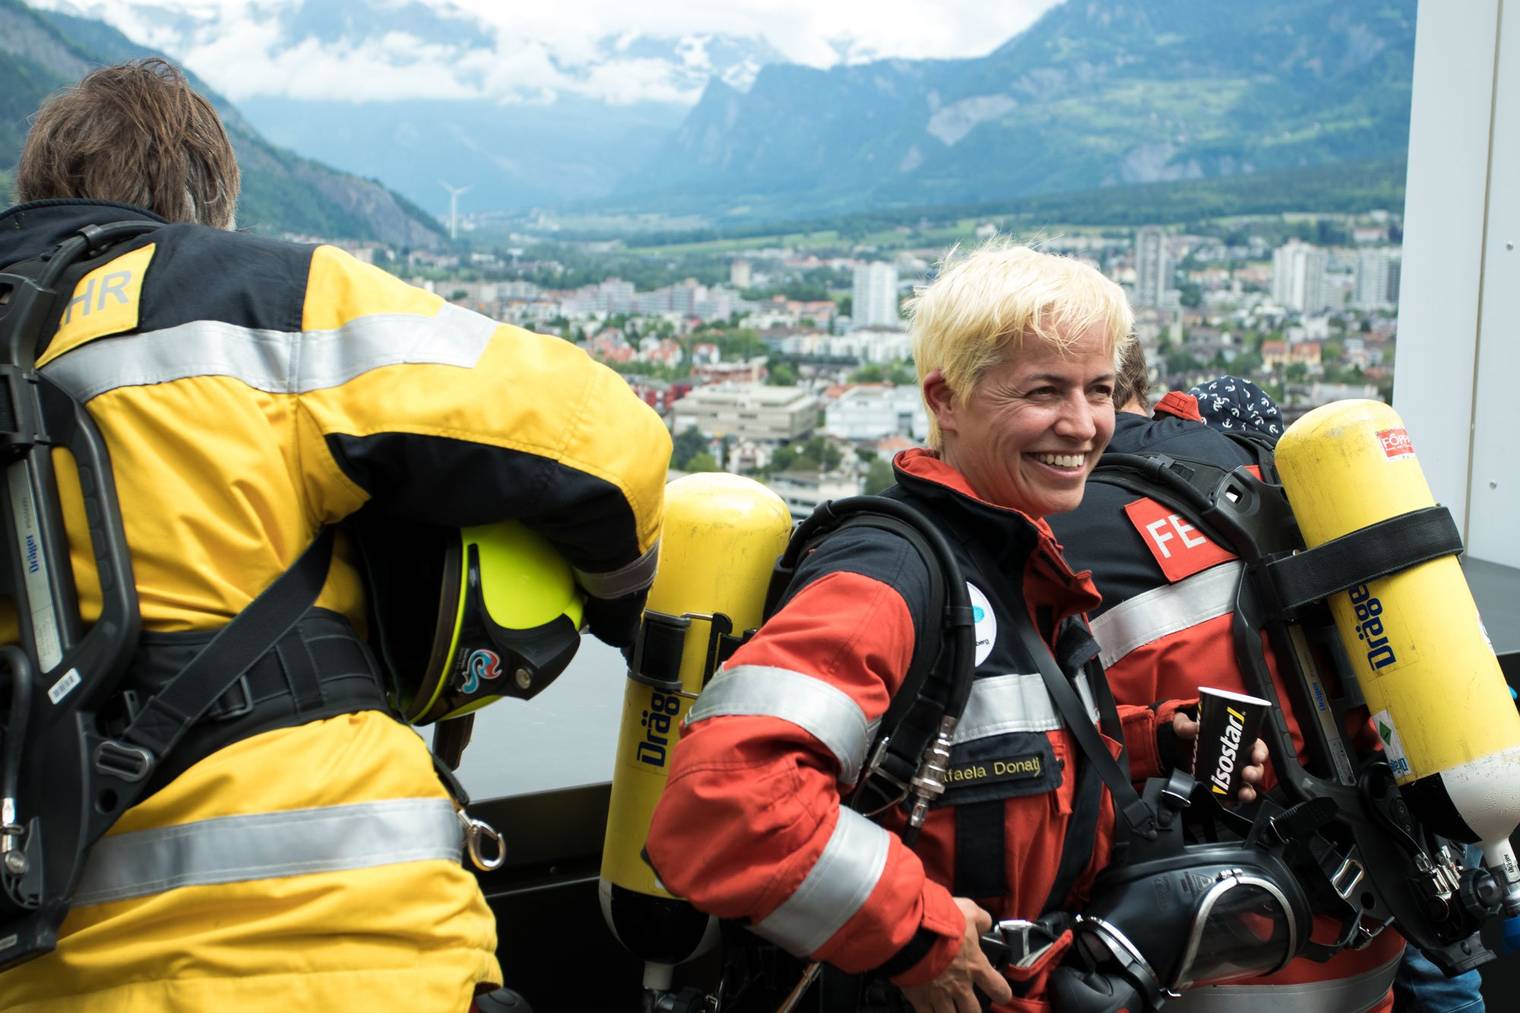 Nach dem Rennen konnten die Feuerwehrleute letztes Jahr den Blick auf Chur geniessen. (Bild: zVg)